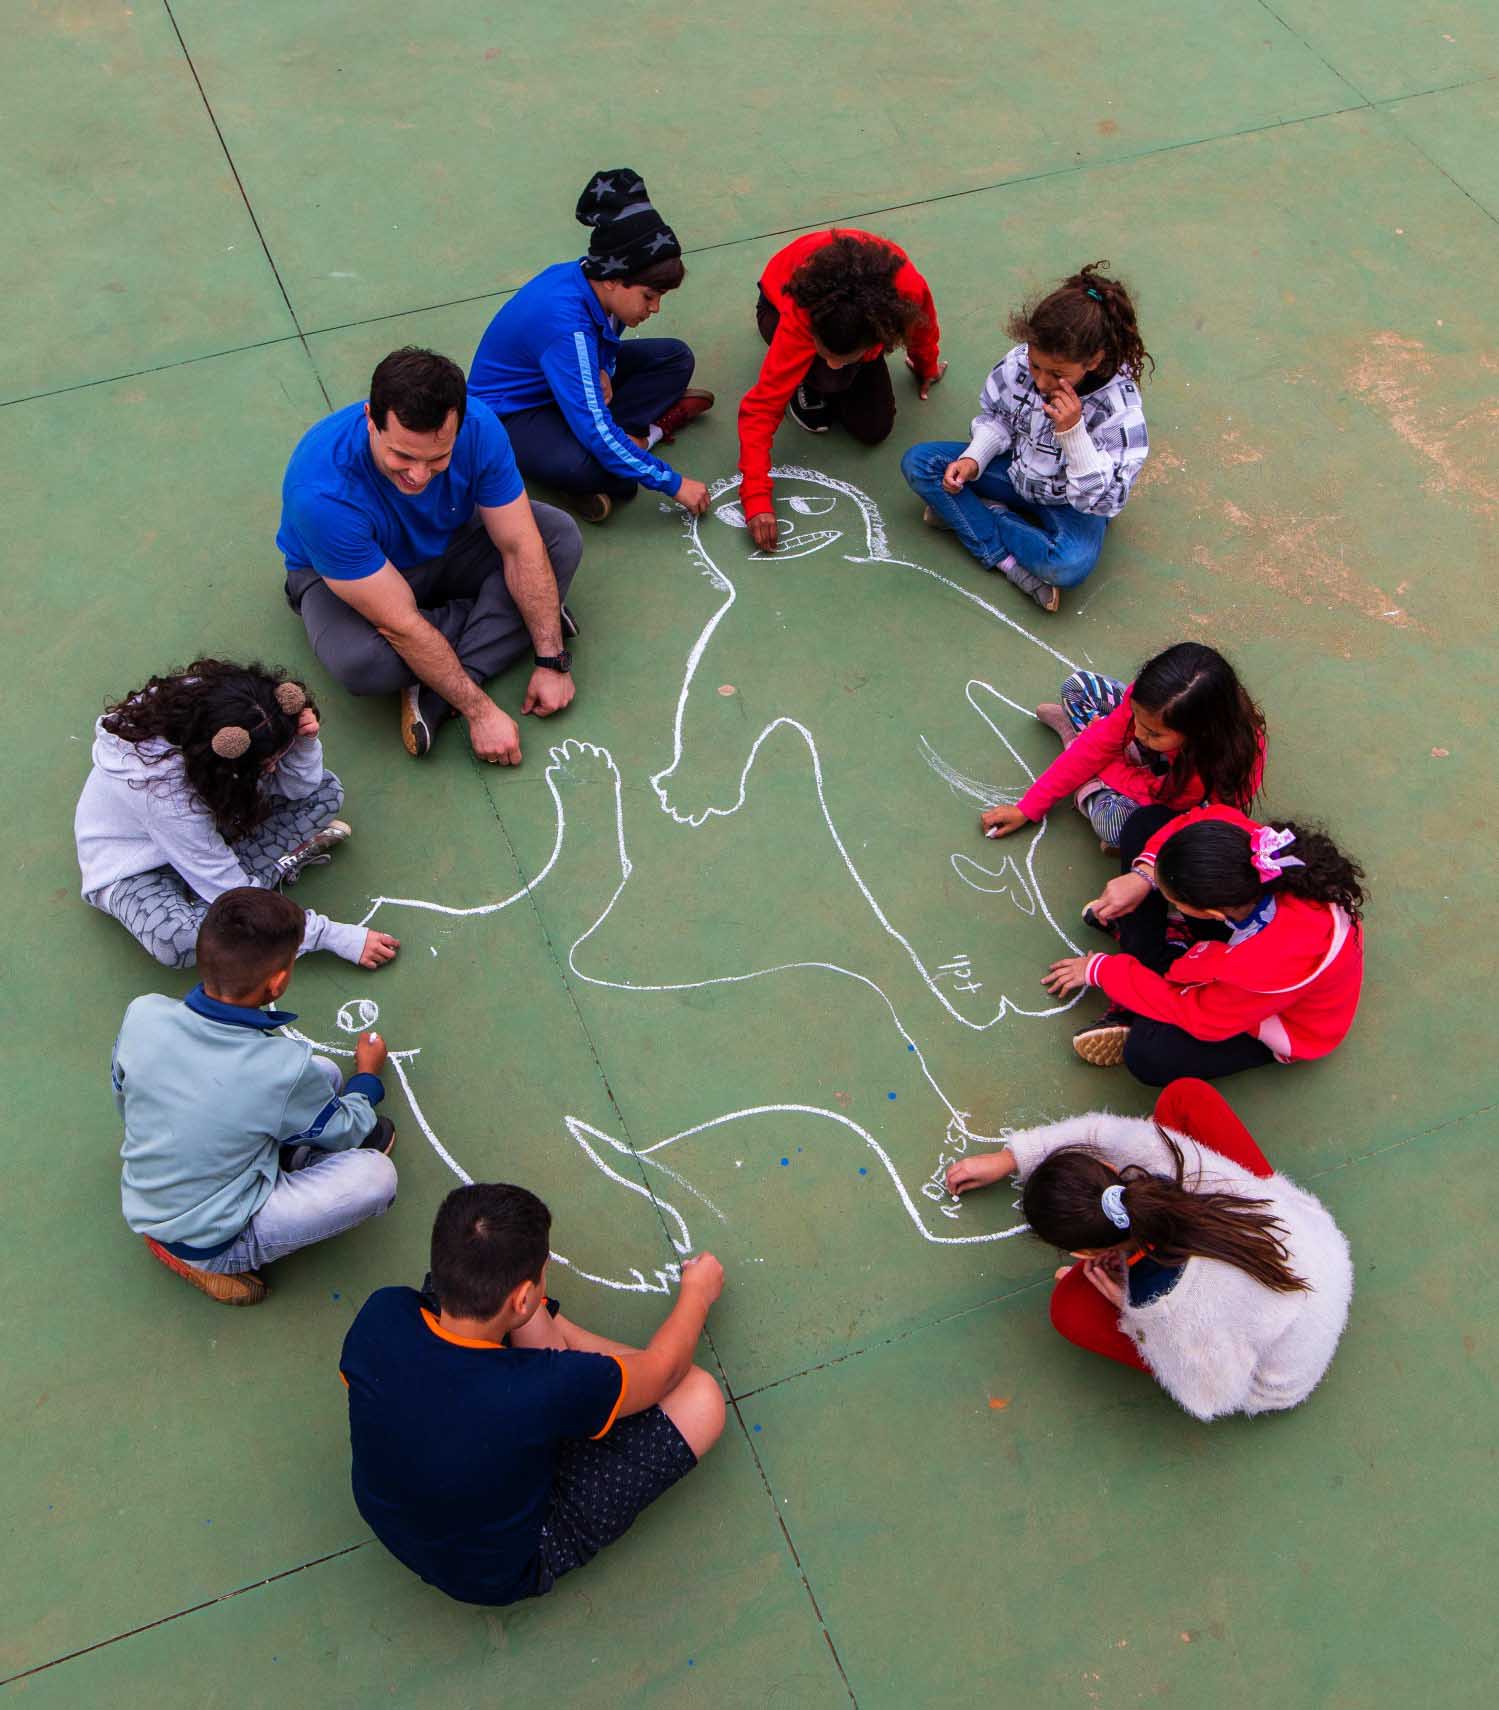 Imagem aérea do professor Luiz Gustavo e sua turma desenhando corpos no chão da quadra poliesportiva, usando giz. Fim da descrição.